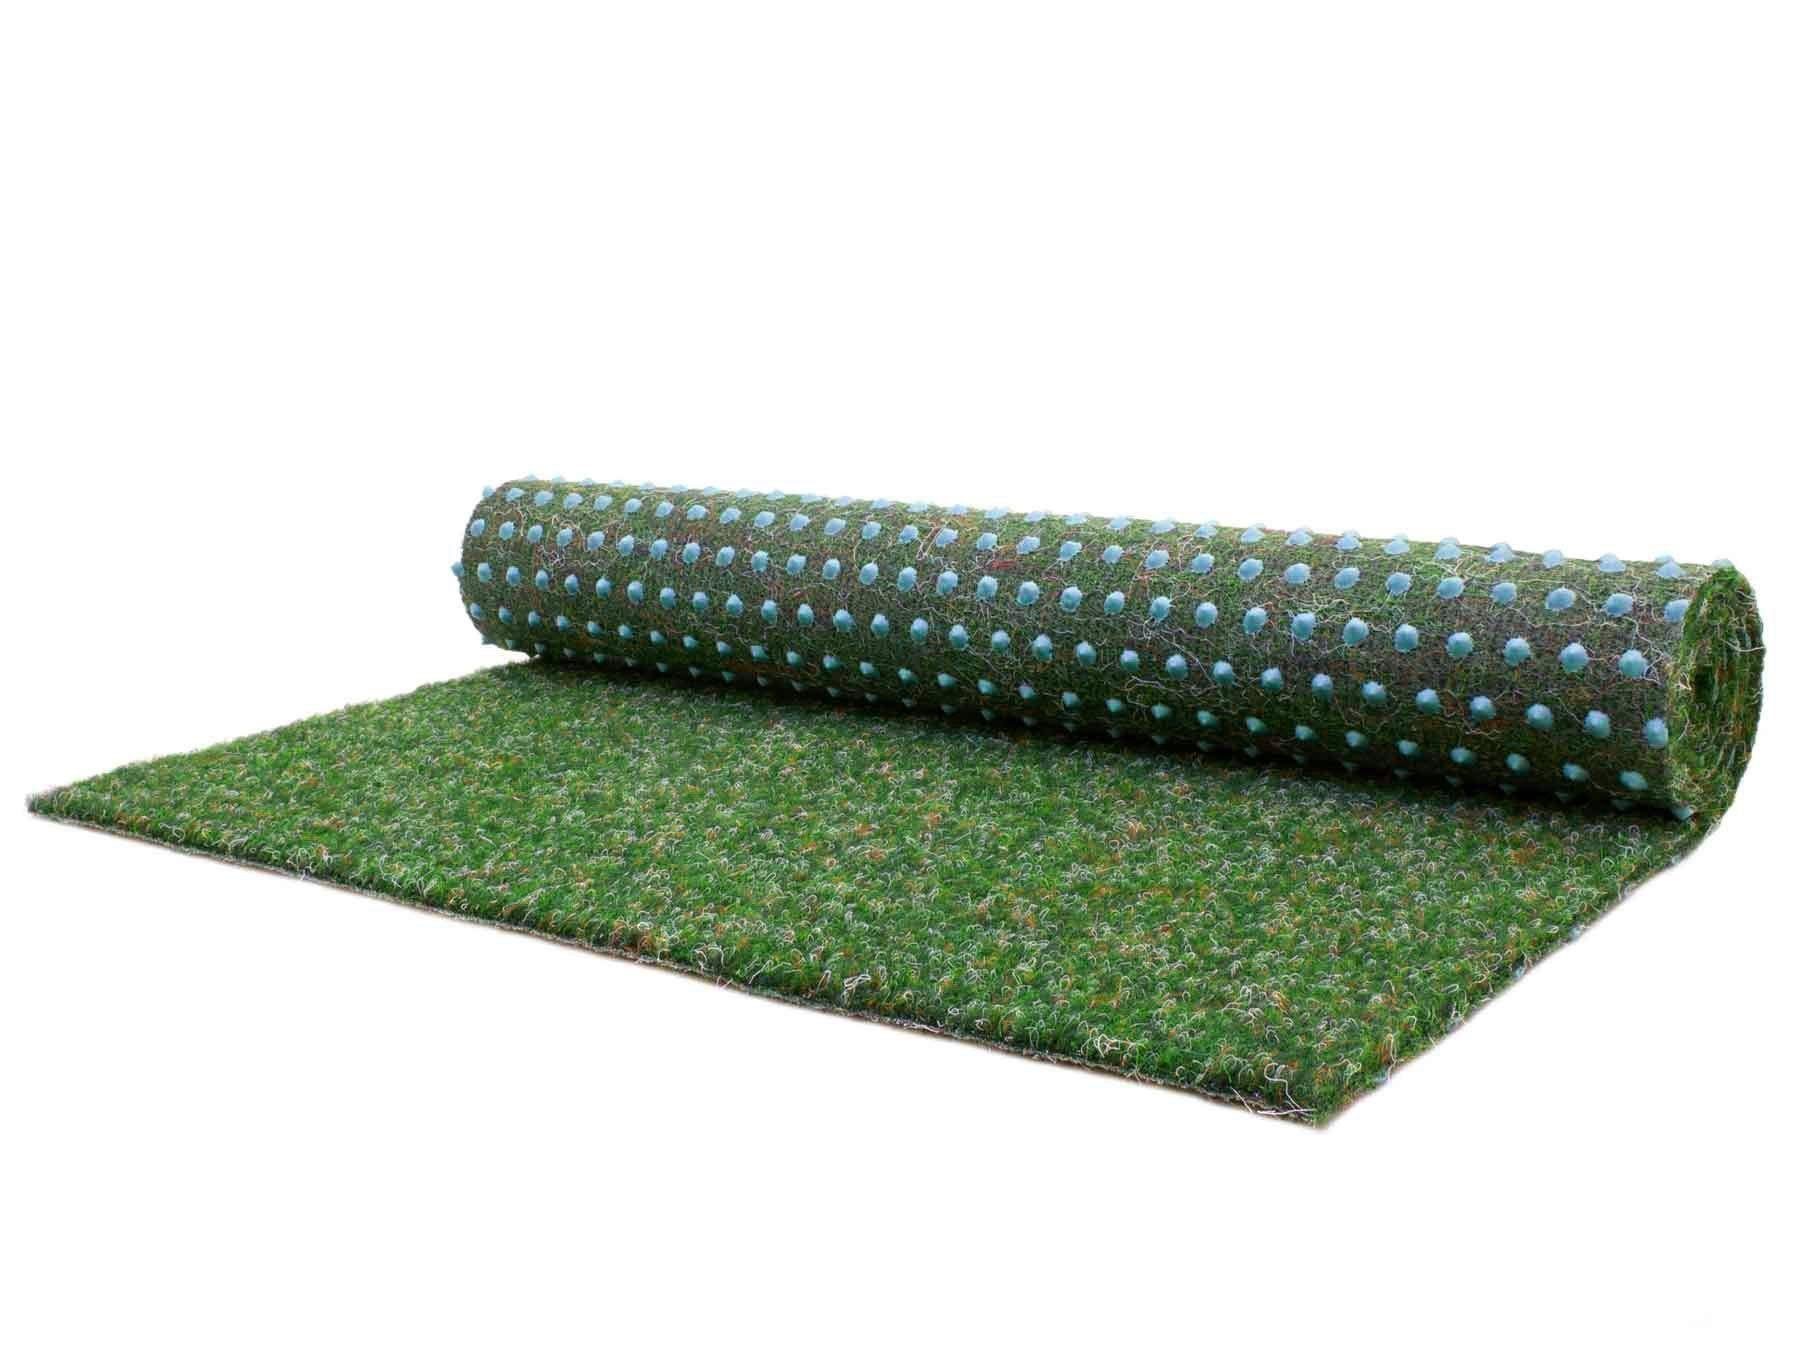 Textil, Rasenteppich, Primaflor-Ideen in Noppen blau, mit mm, GREEN, Höhe: Kunstrasen rechteckig, 7,5